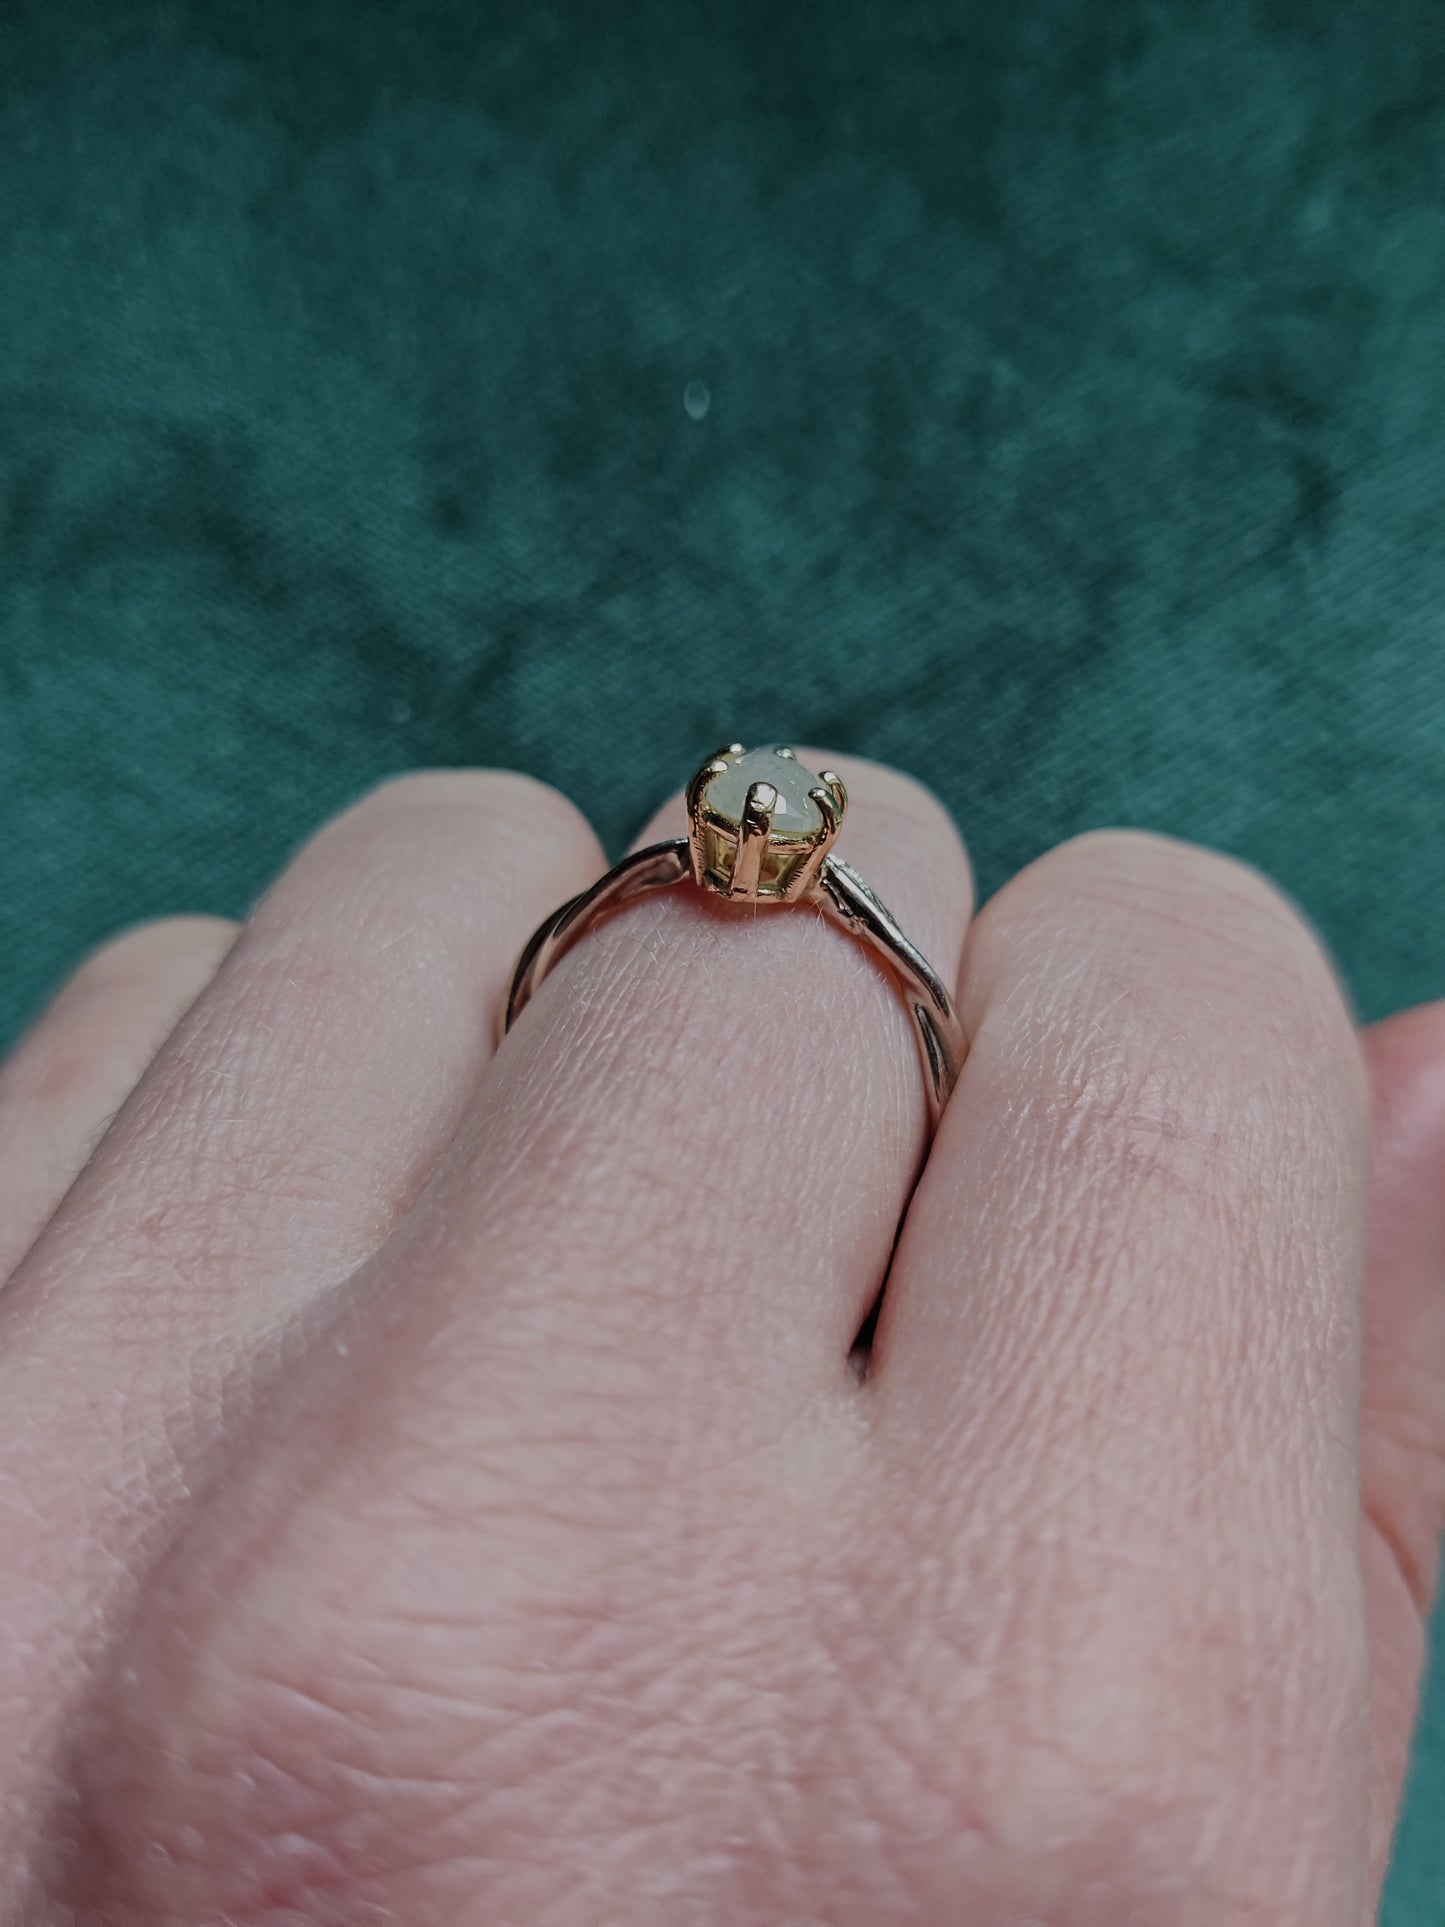 ring met witte ovale diamant is er maar één. Het is een uniek stuk, perfect als alternatieve verlovingsring, of als ring met een bijzondere herinnering. 
Handgemaakt in Leuven